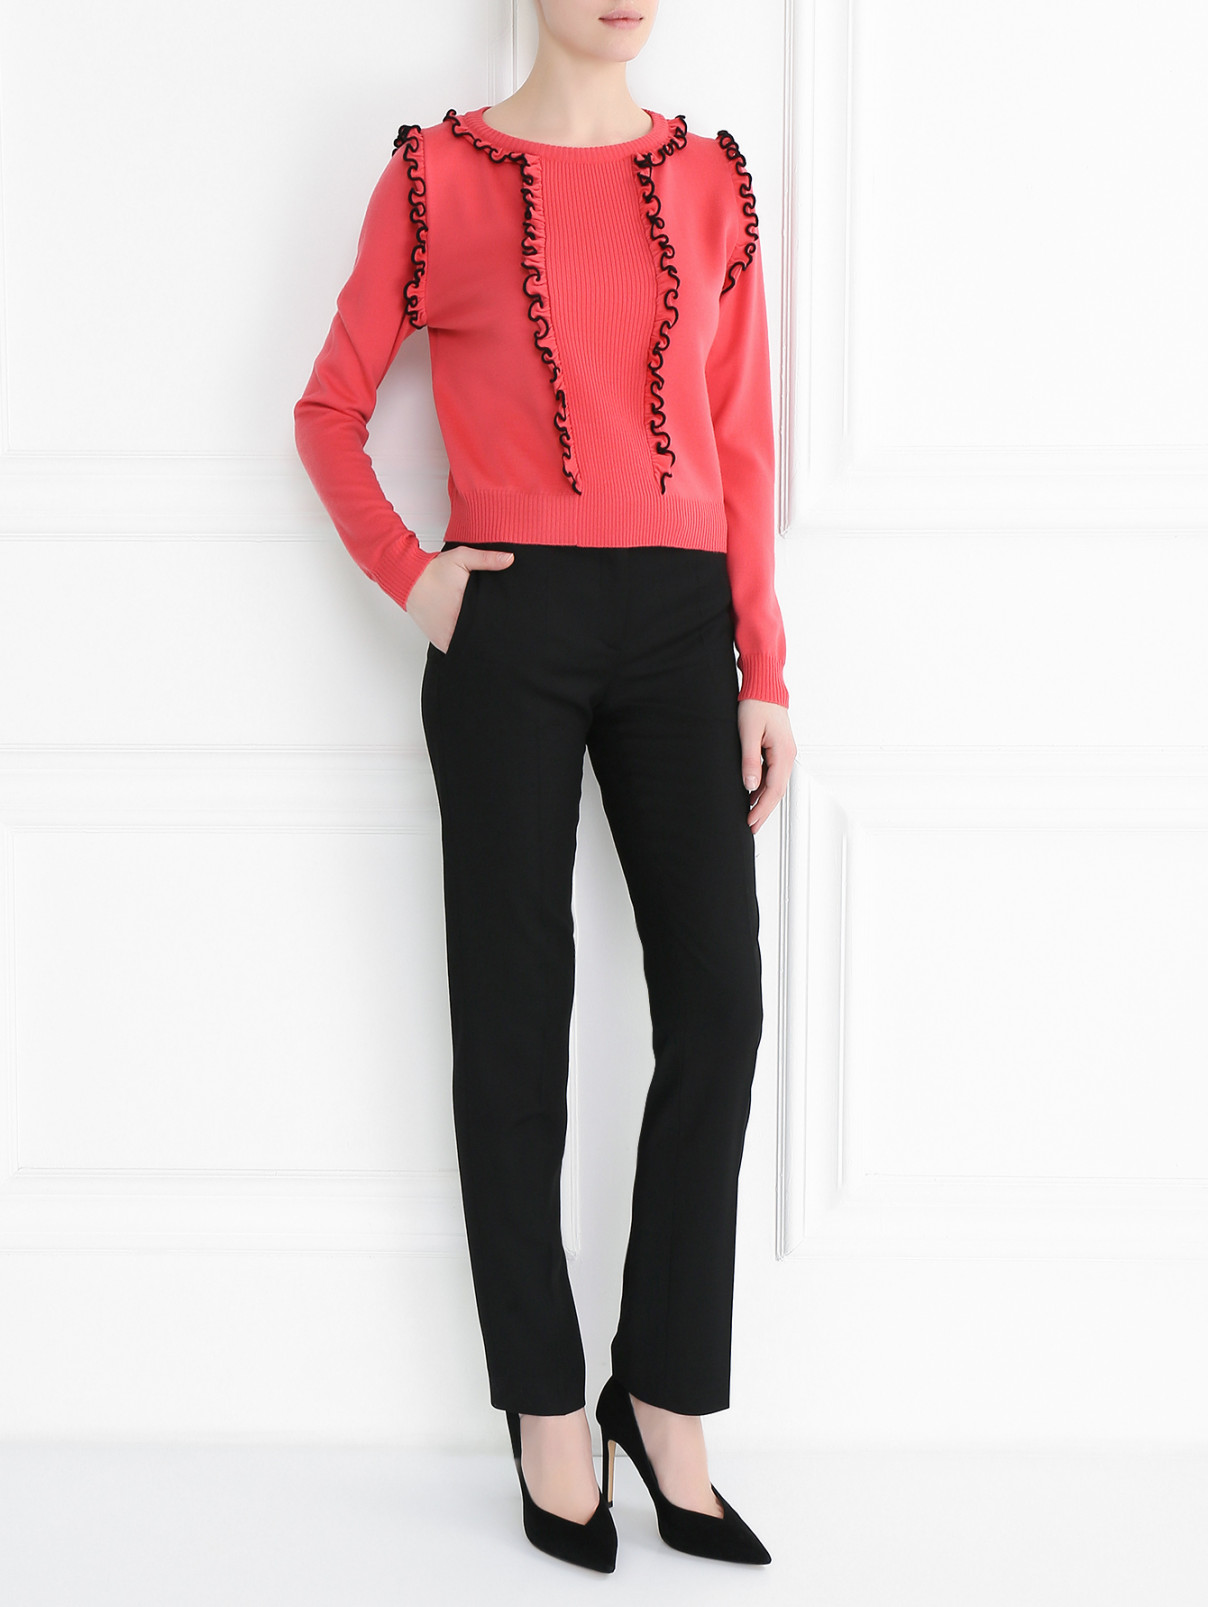 Джемпер из шерсти с декоративными рюшами Moschino Boutique  –  Модель Общий вид  – Цвет:  Розовый